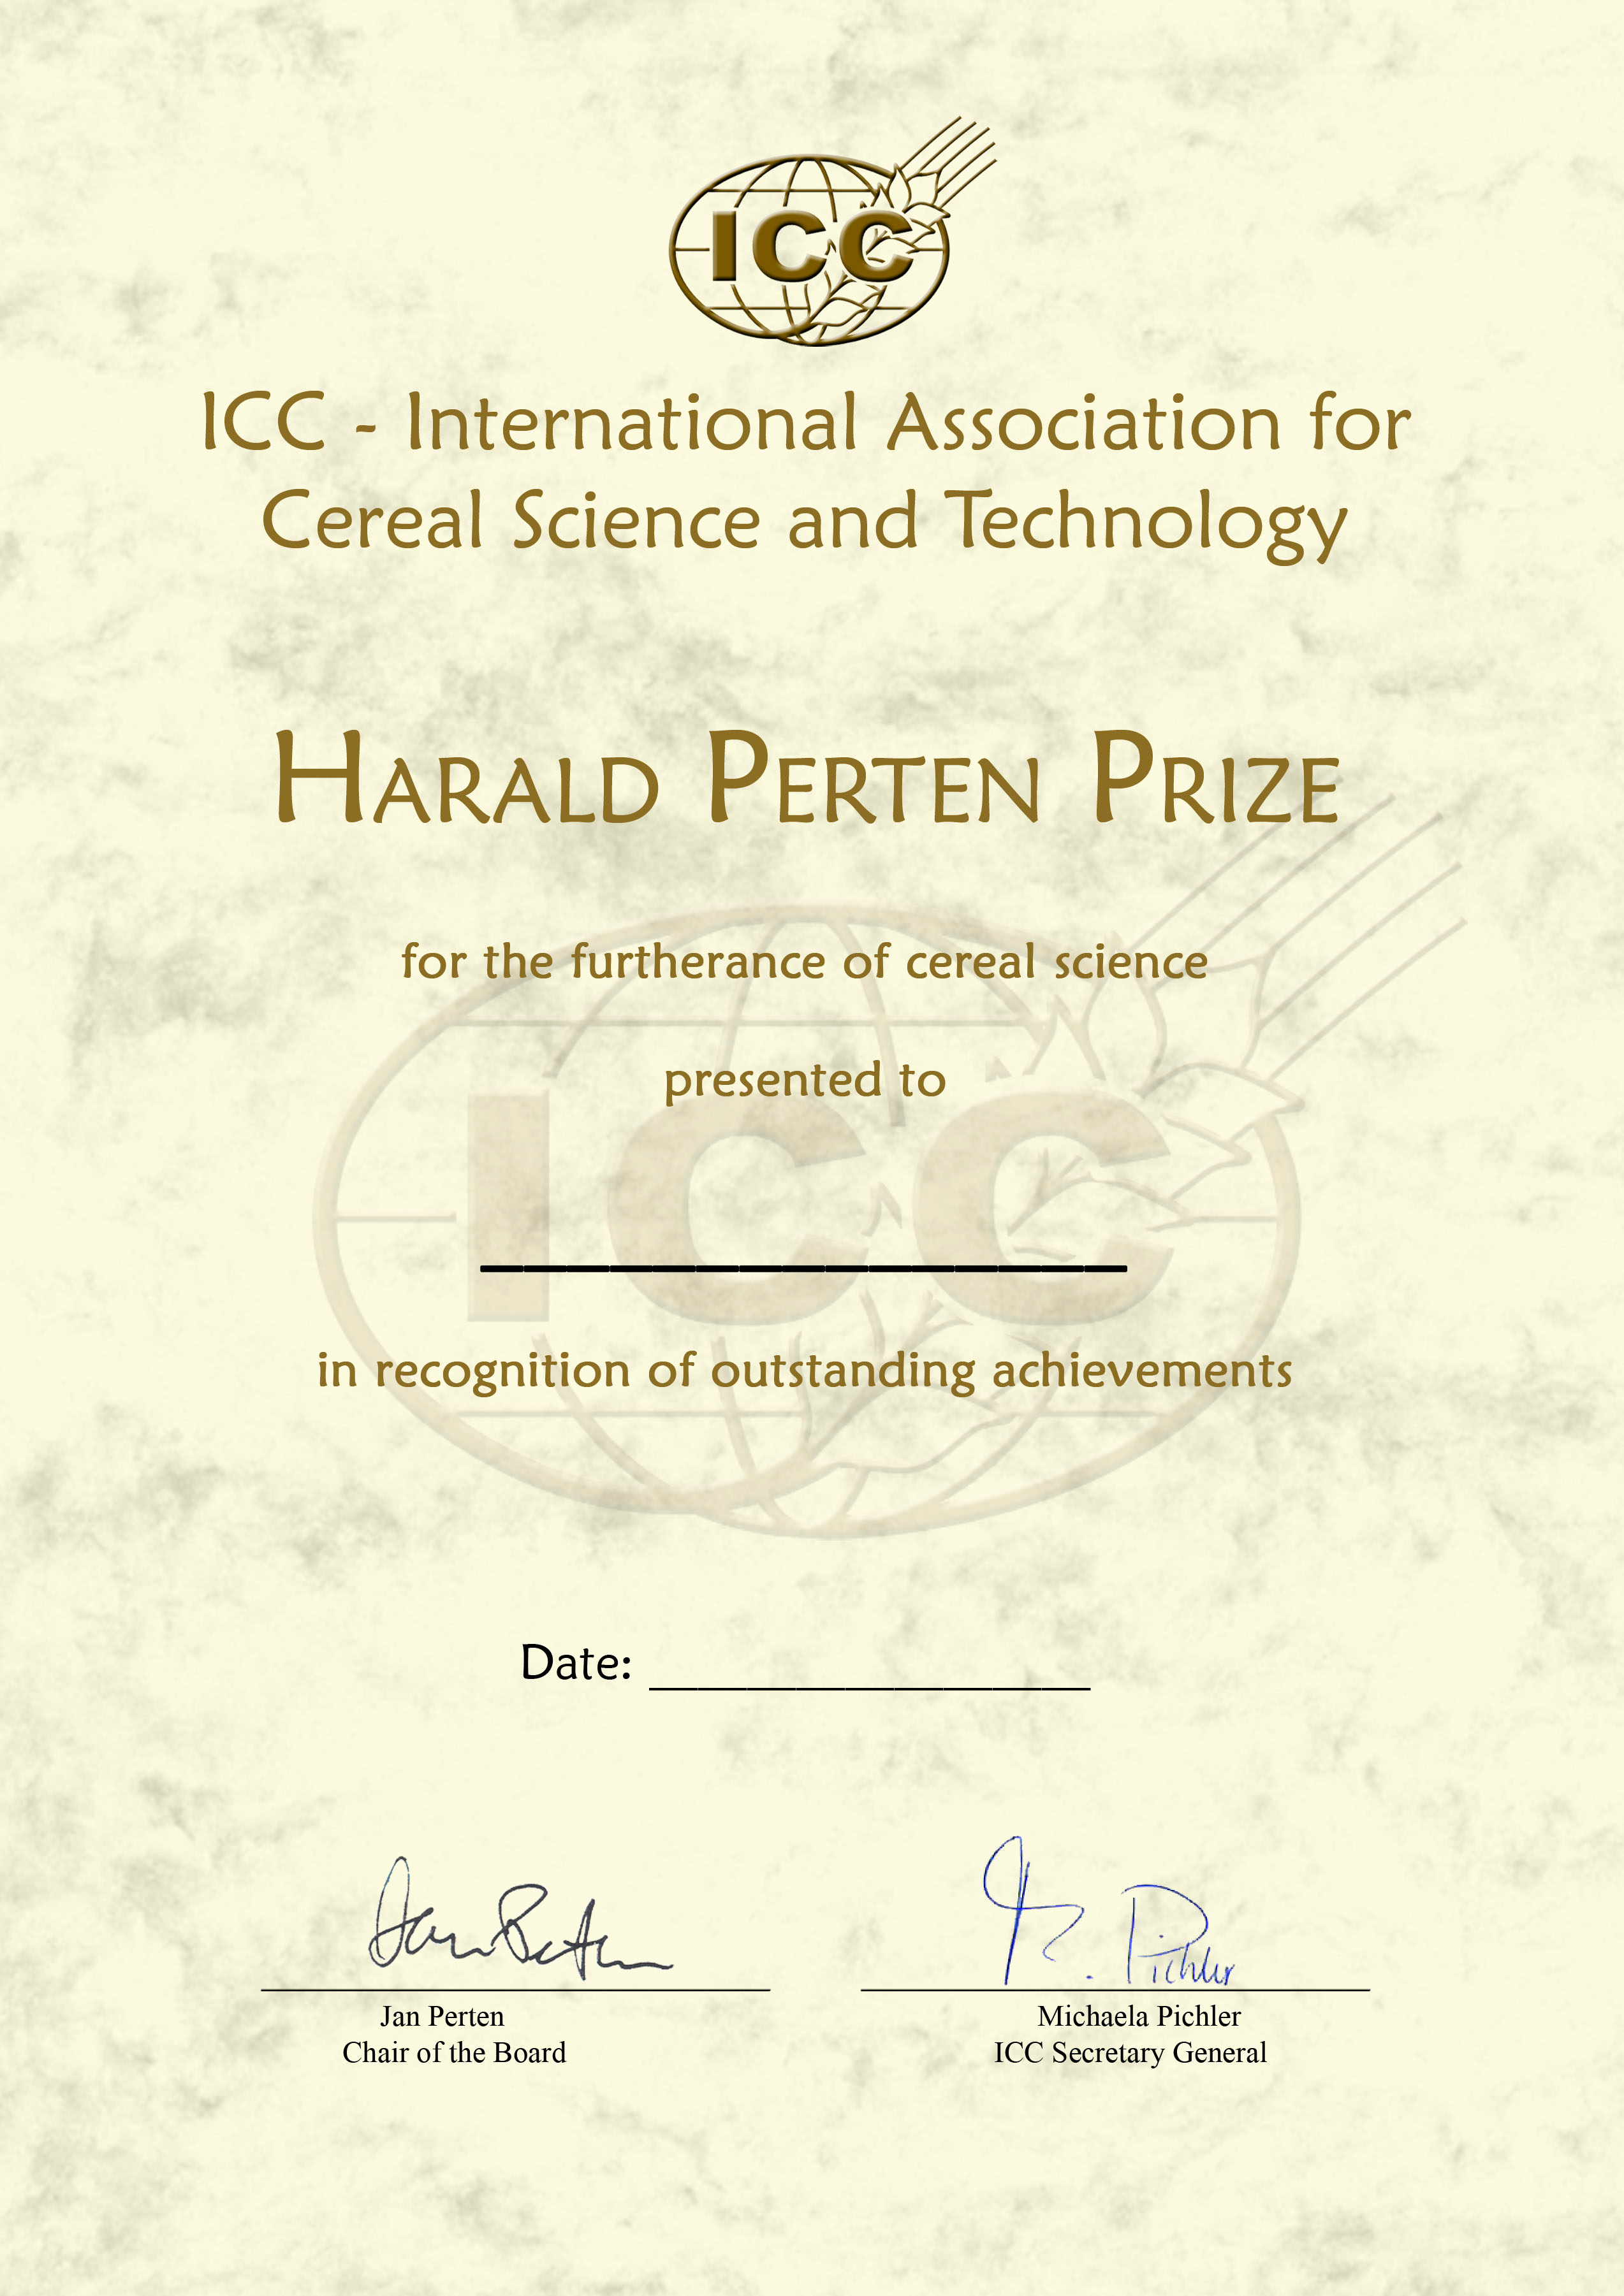 Harald_Perten_Prize.jpg